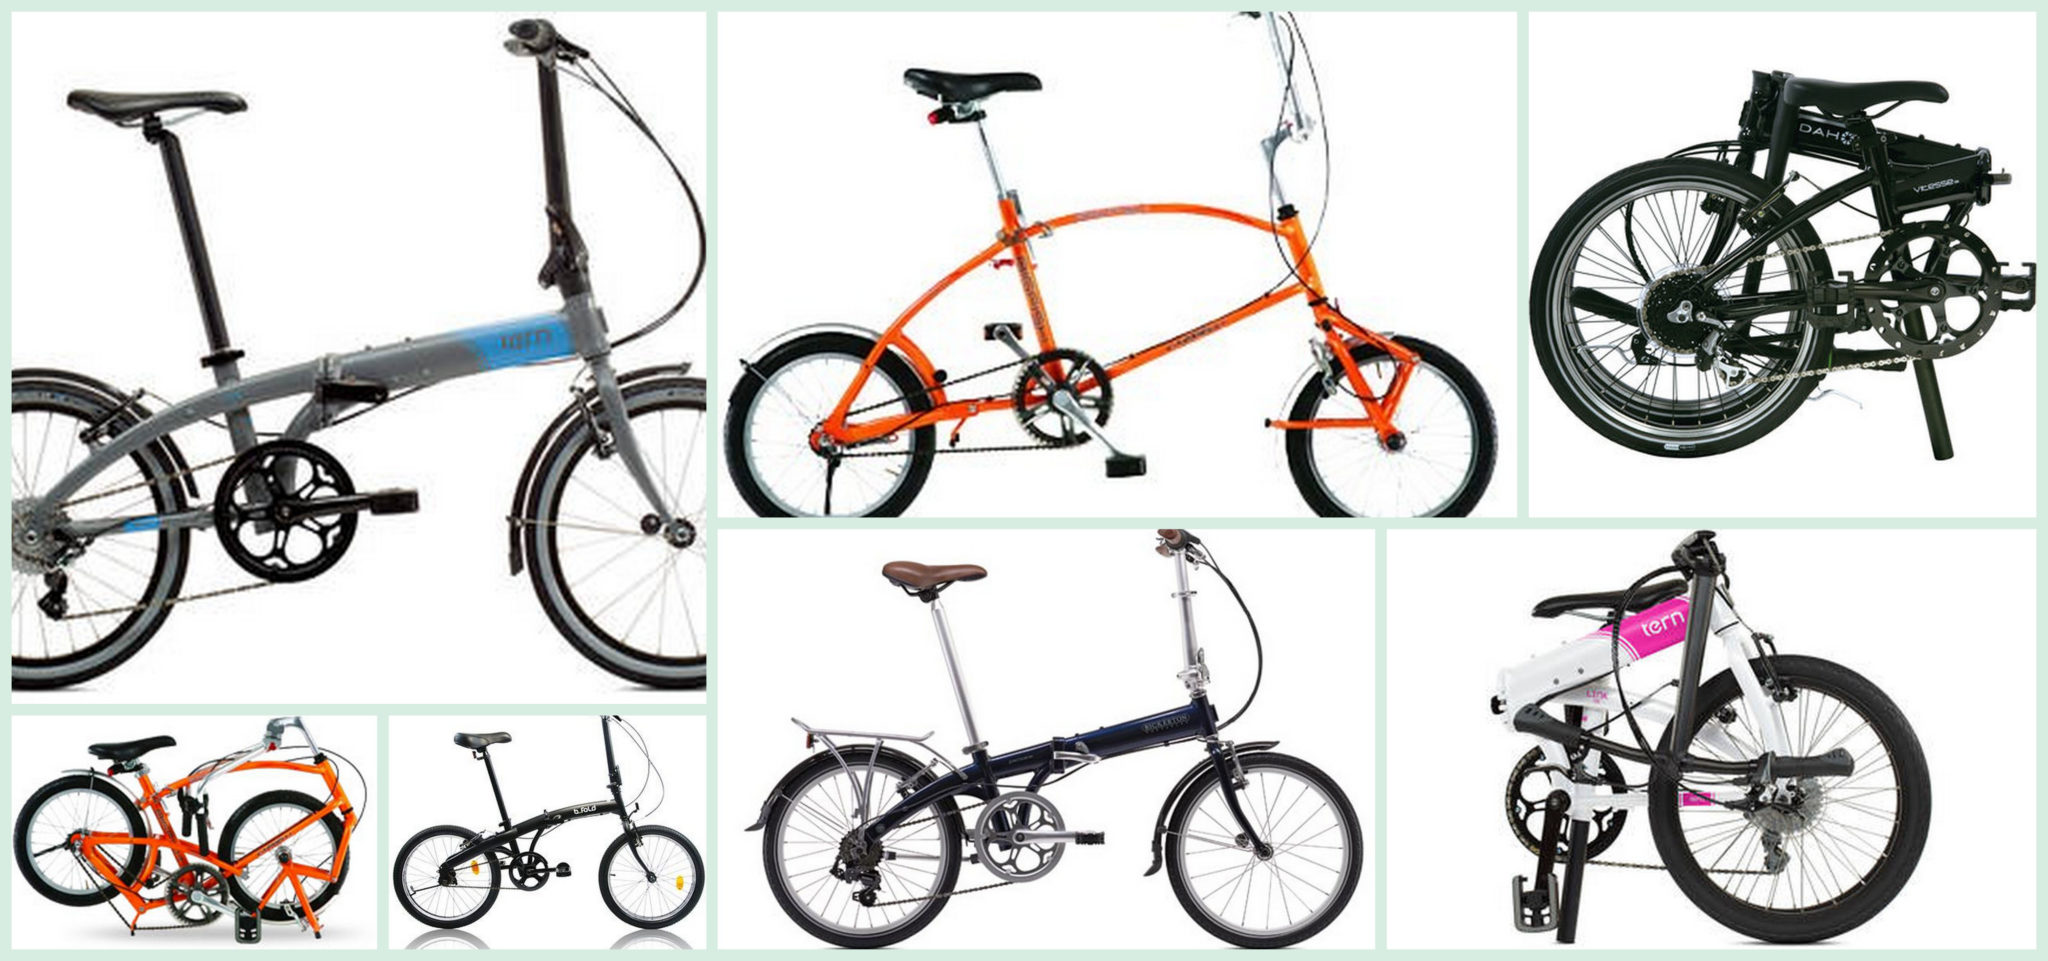 Les 7 meilleurs vélos pliants pour éviter les transports publics